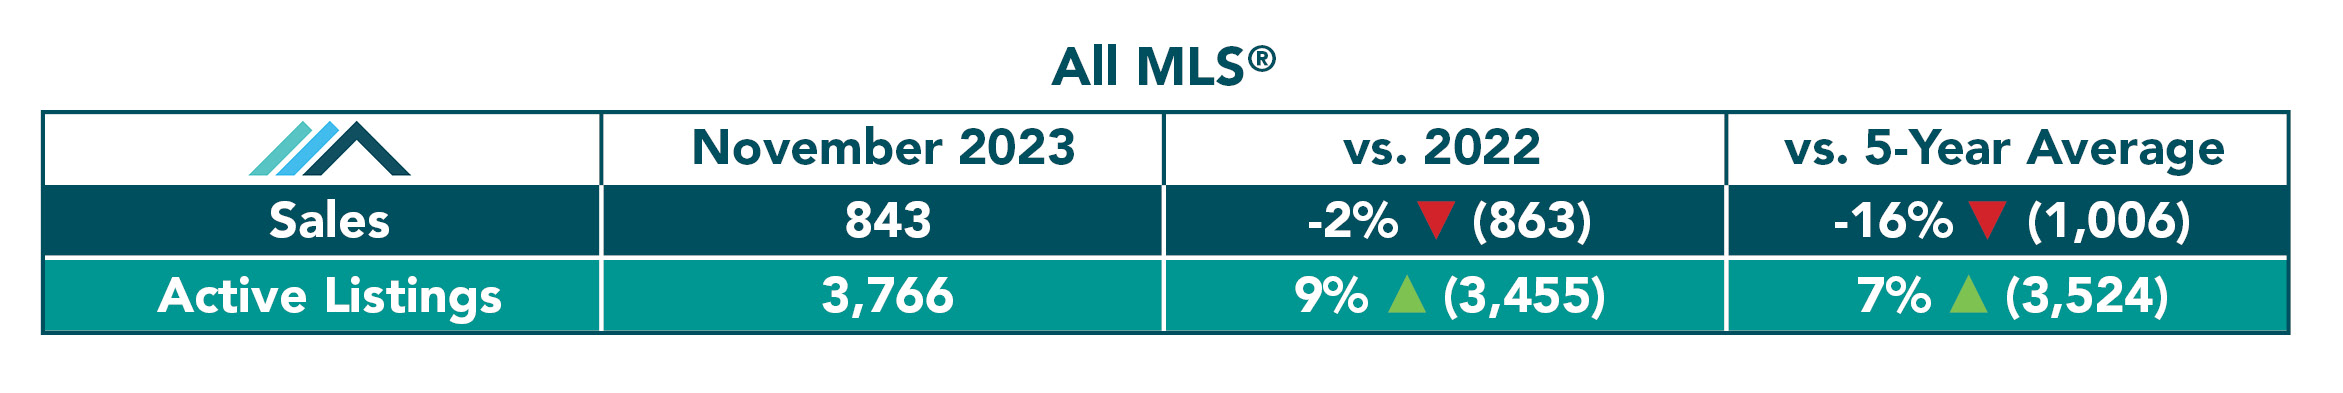 All-MLS-Table-Nov-23.jpg (177 KB)